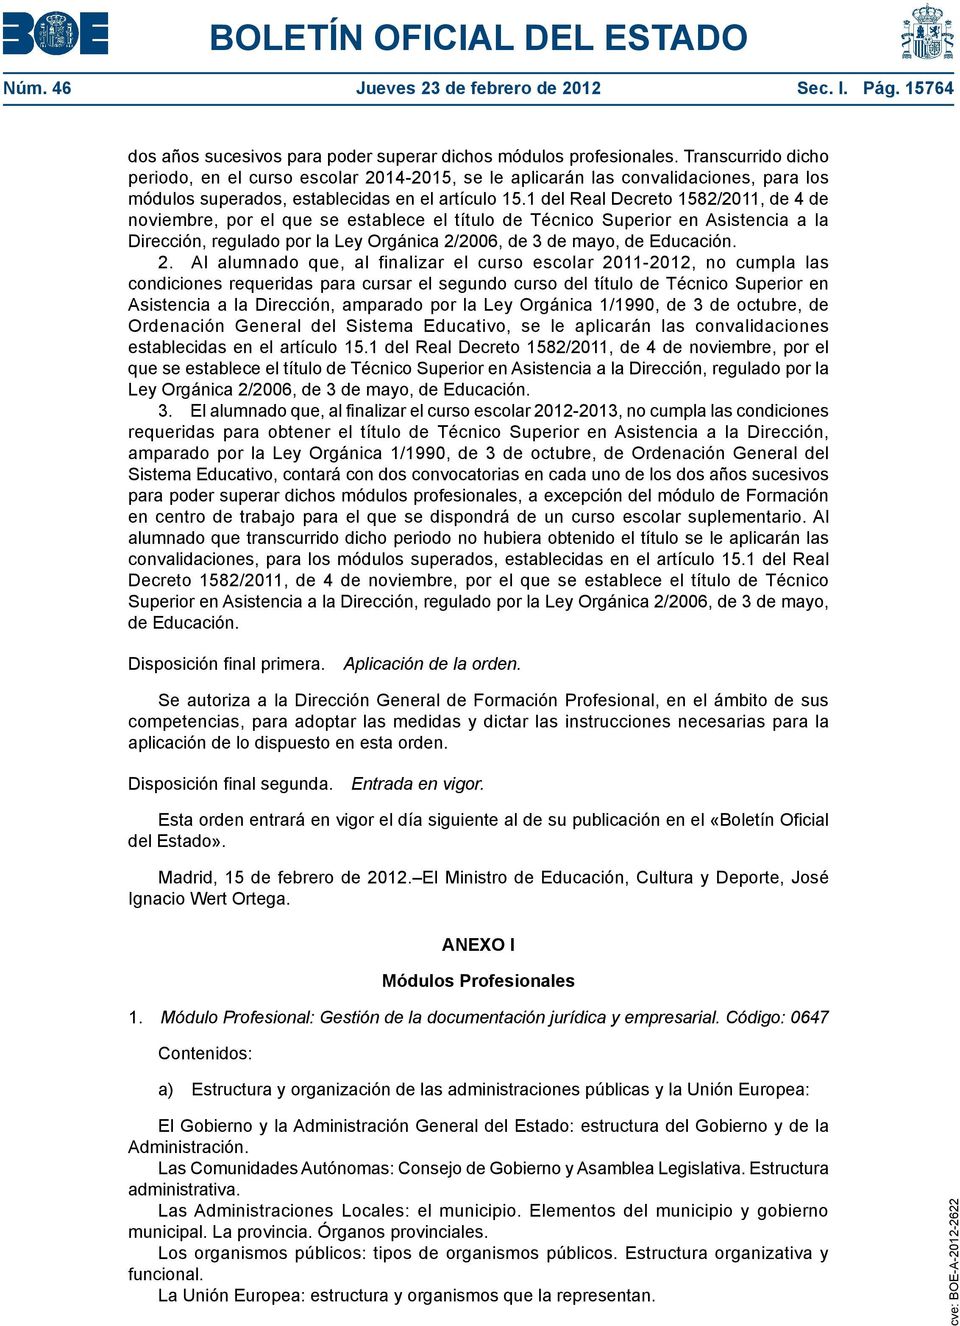 1 del Real Decreto 1582/2011, de 4 de noviembre, por el que se establece el título de Técnico Superior en Asistencia a la Dirección, regulado por la Ley Orgánica 2/